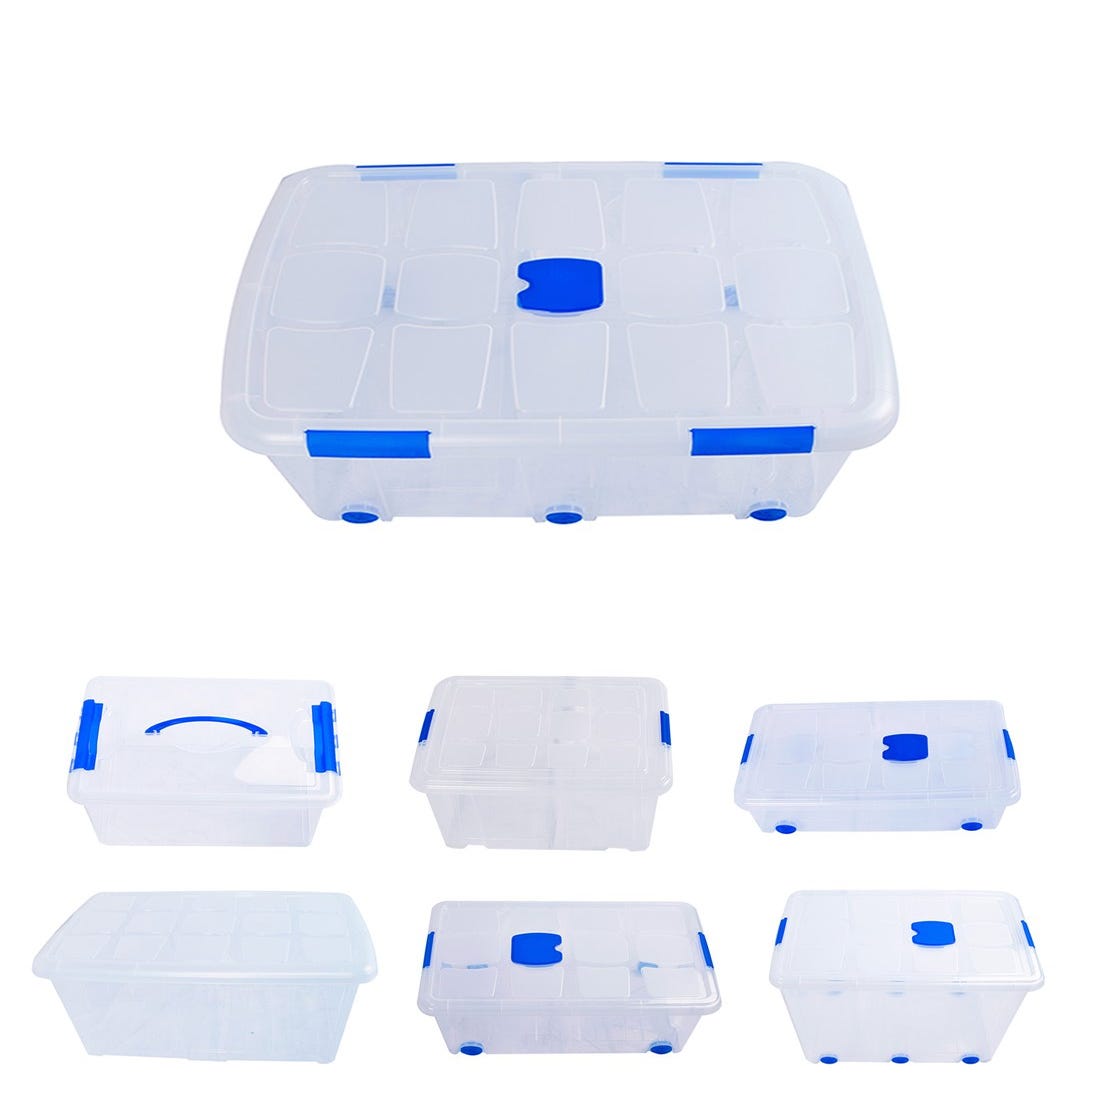 Cajas de Almacenaje Transparentes – Cajas Organizadoras de Plástico con Tapa, Pack 4 uds (30L)